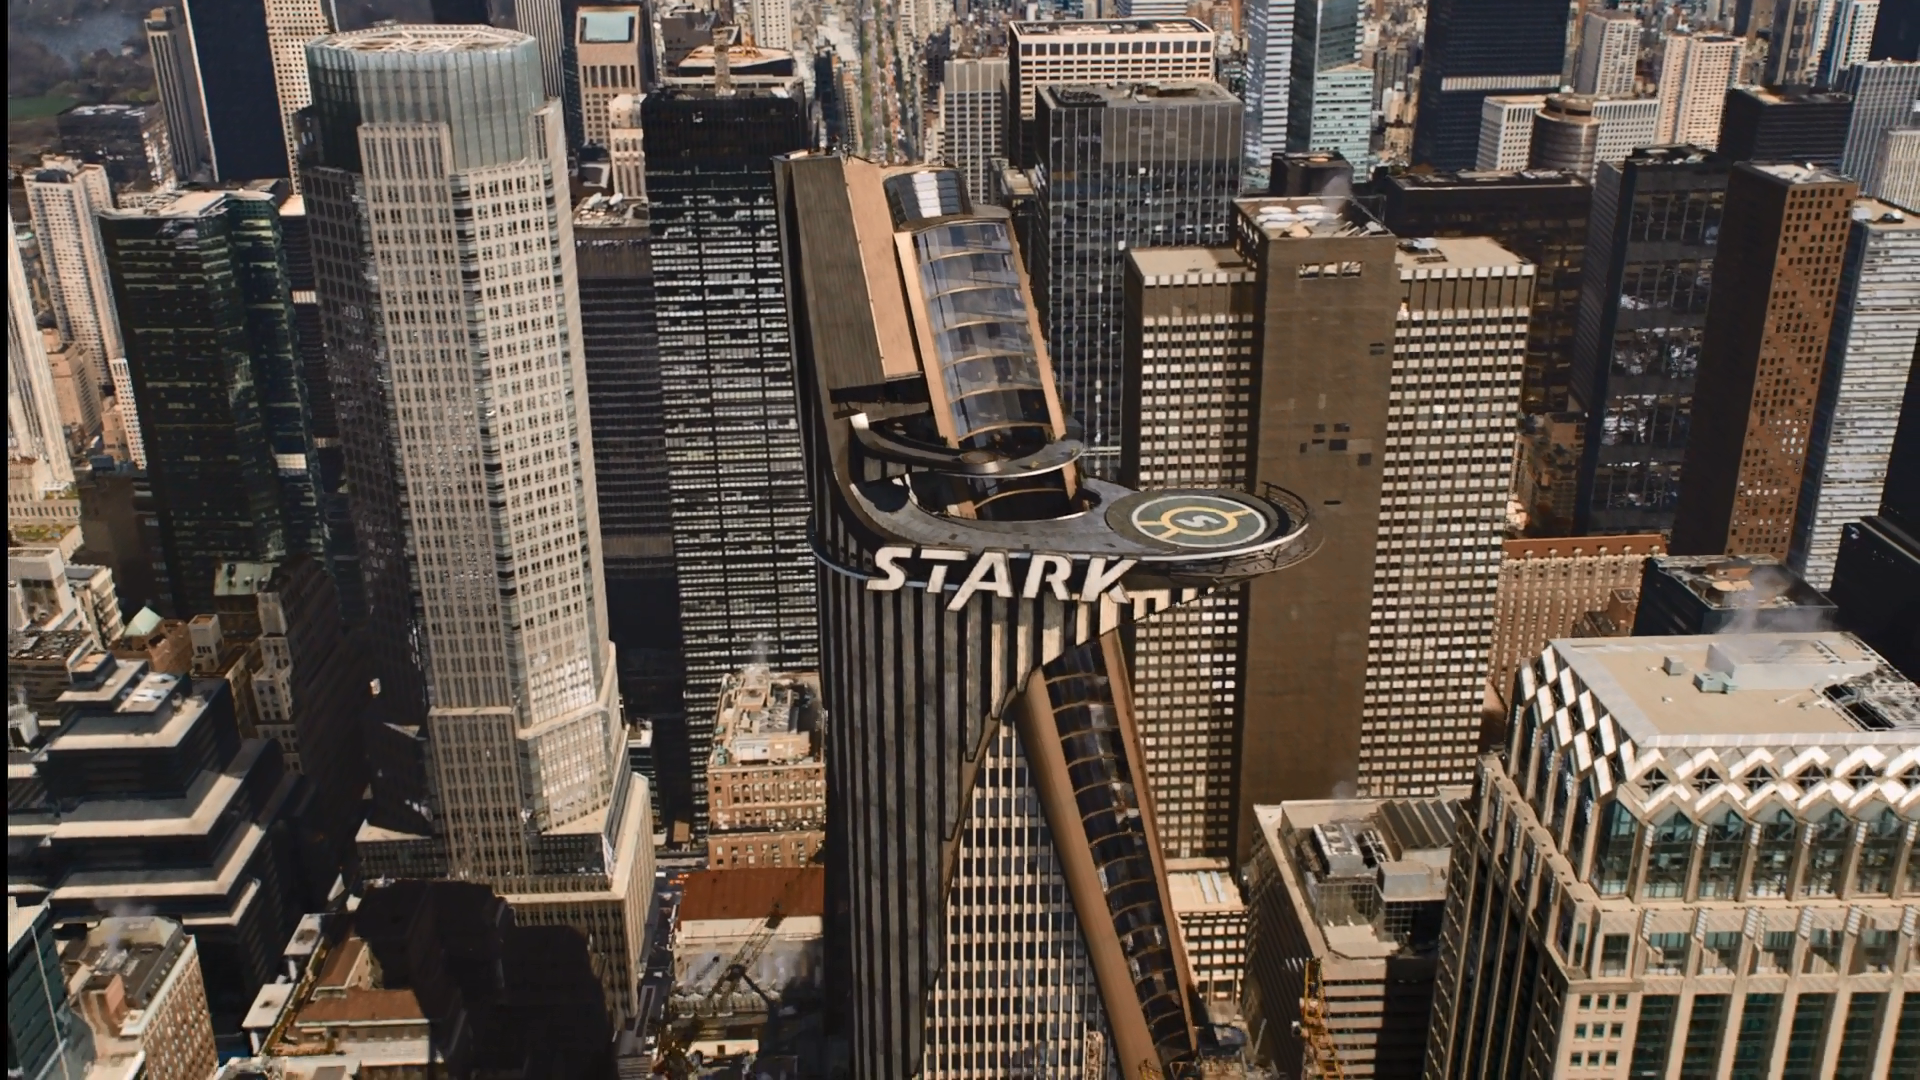 Stark Tower in "The Avengers"